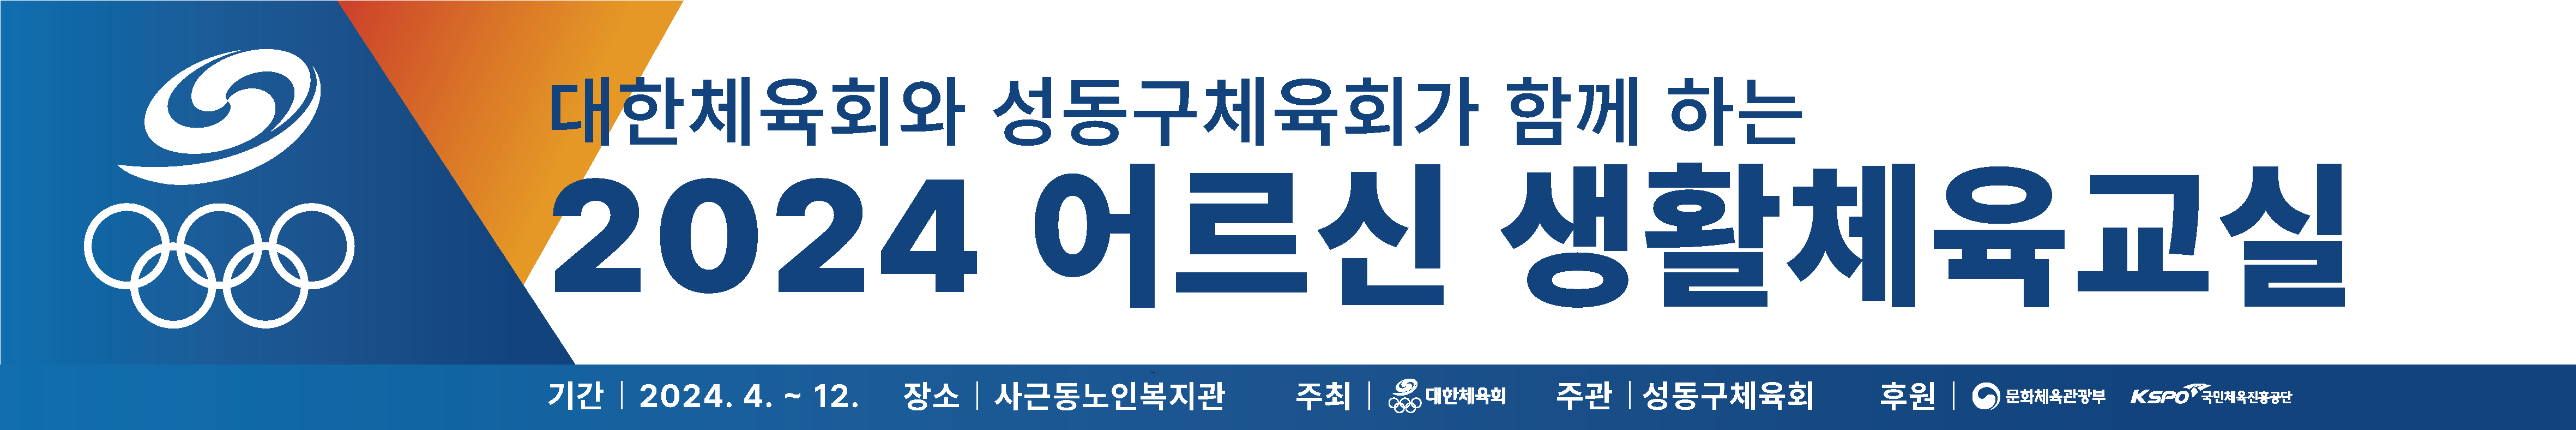 01.어르신생활체육_현수막 (4).ai.png